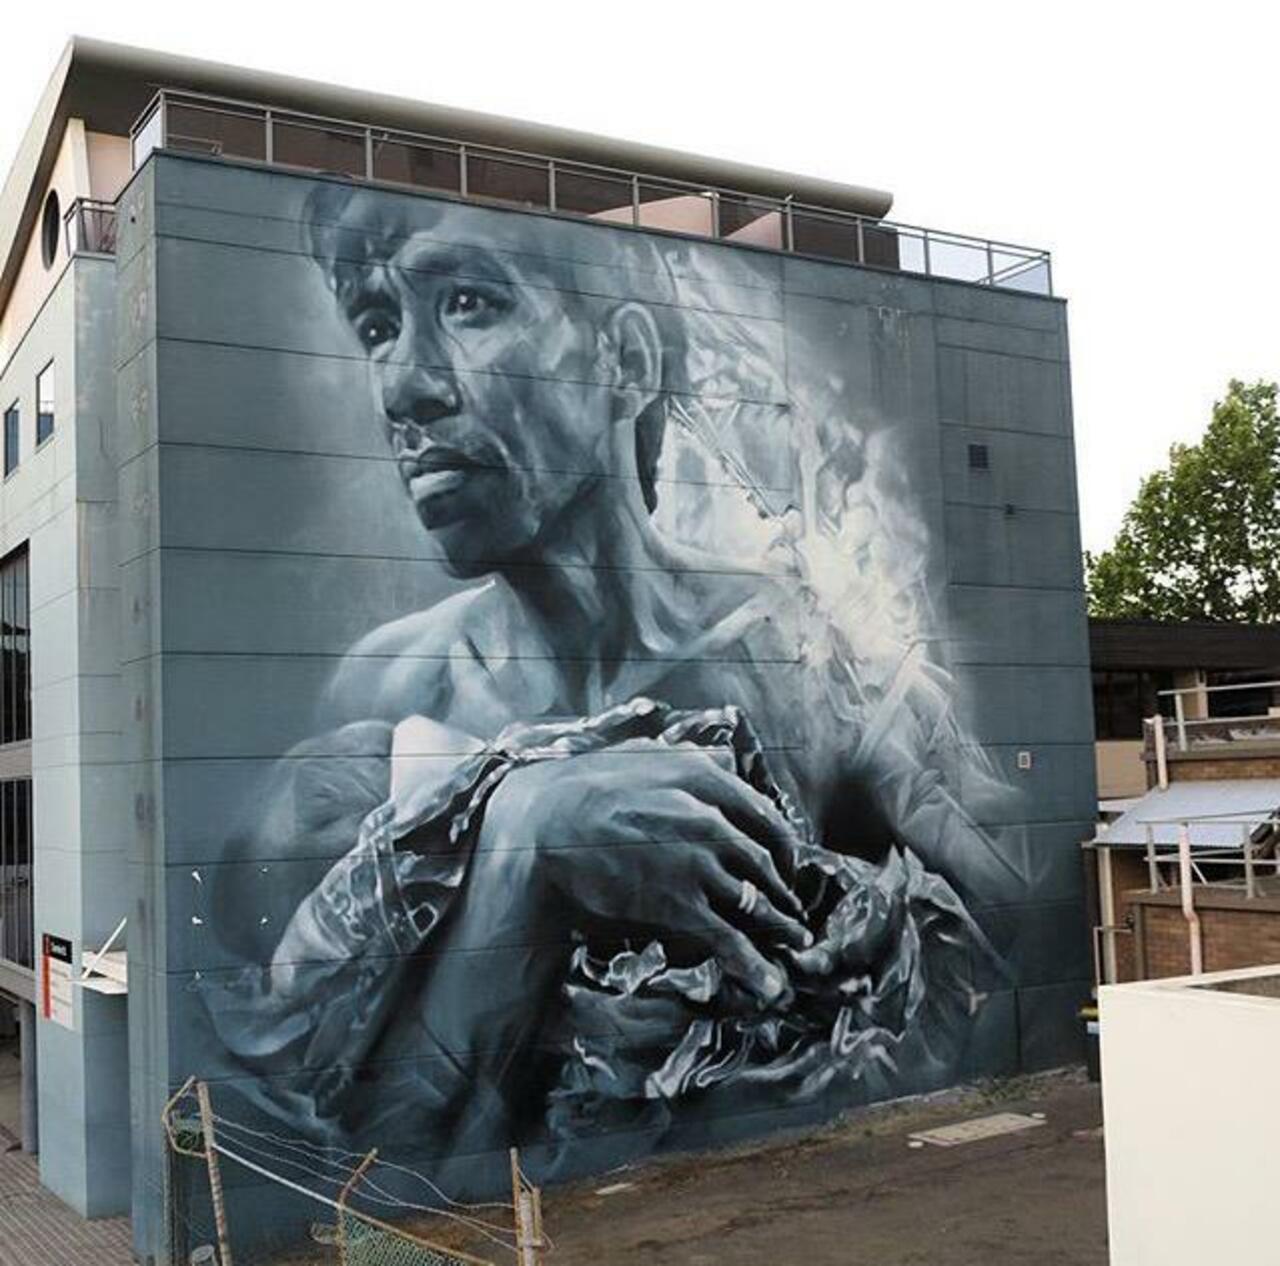 RT @buzz_sandyltn: New Street Art by Guido Van Helten in Wollongong Australia 

#art #graffiti #mural #streetart http://t.co/eP684jDexU